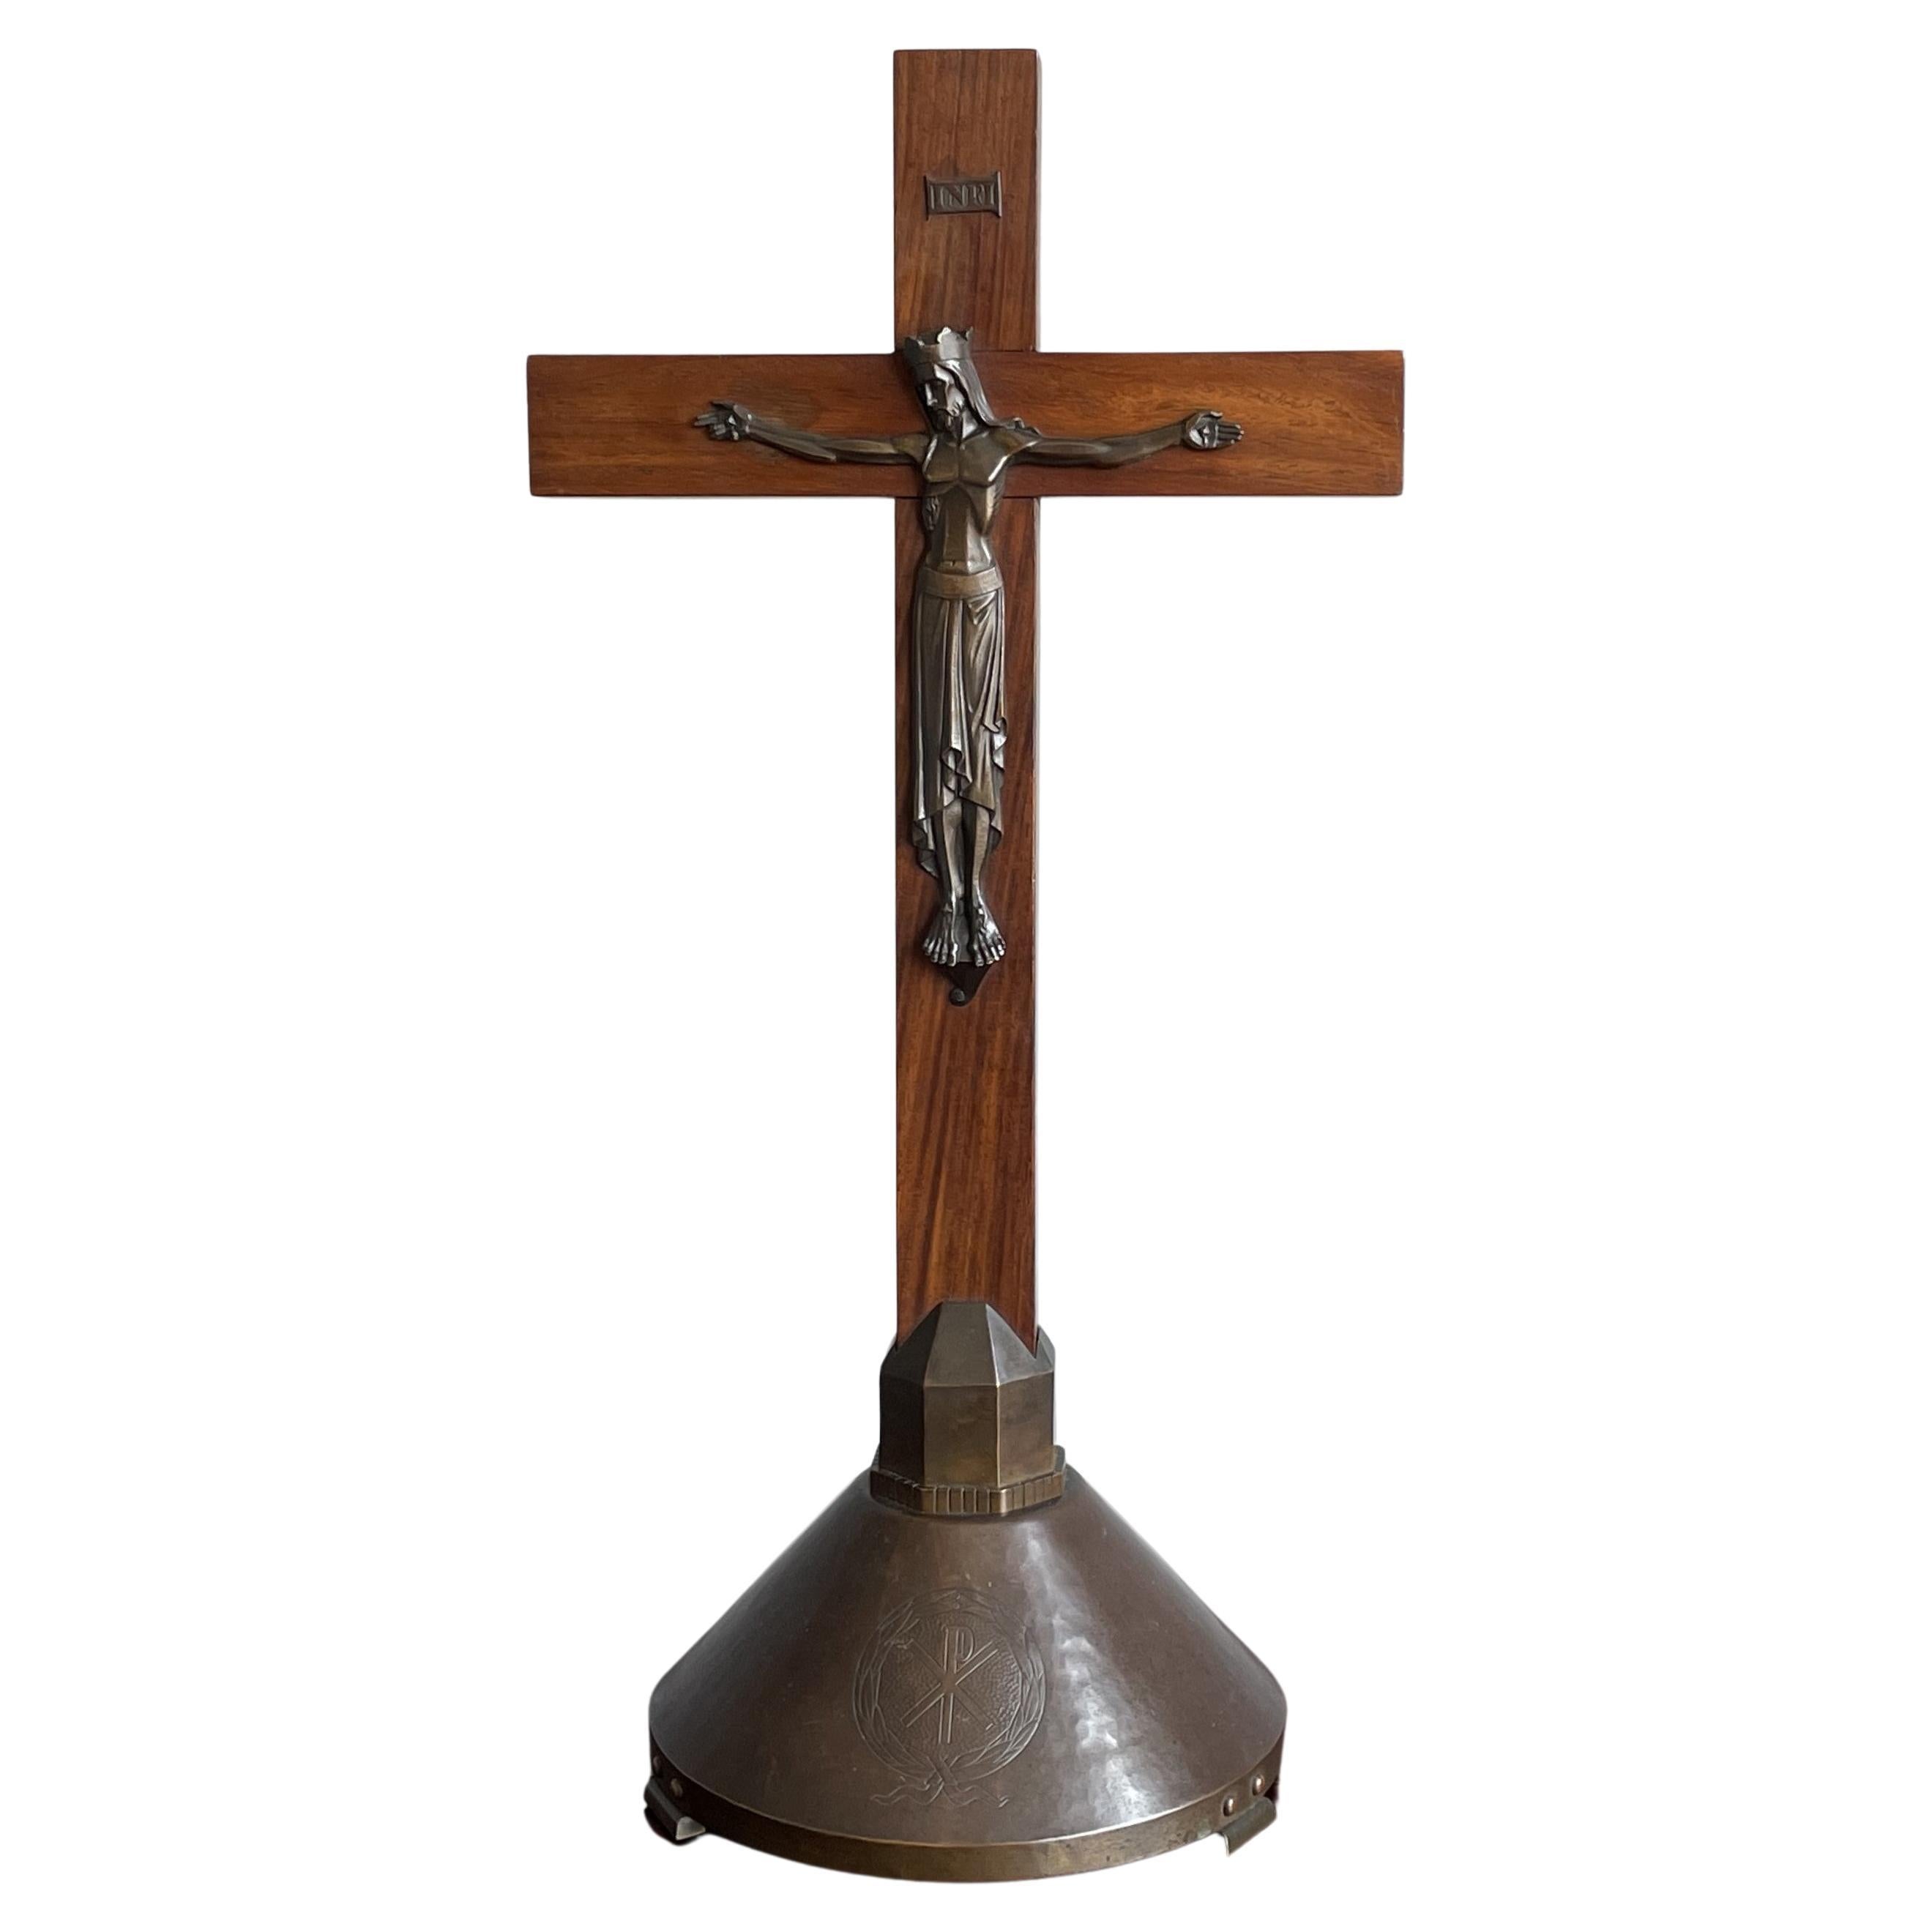 Crucifix Art Déco pur w. Sculpture en bronze stylisée du Christ sur croix en bois de soie